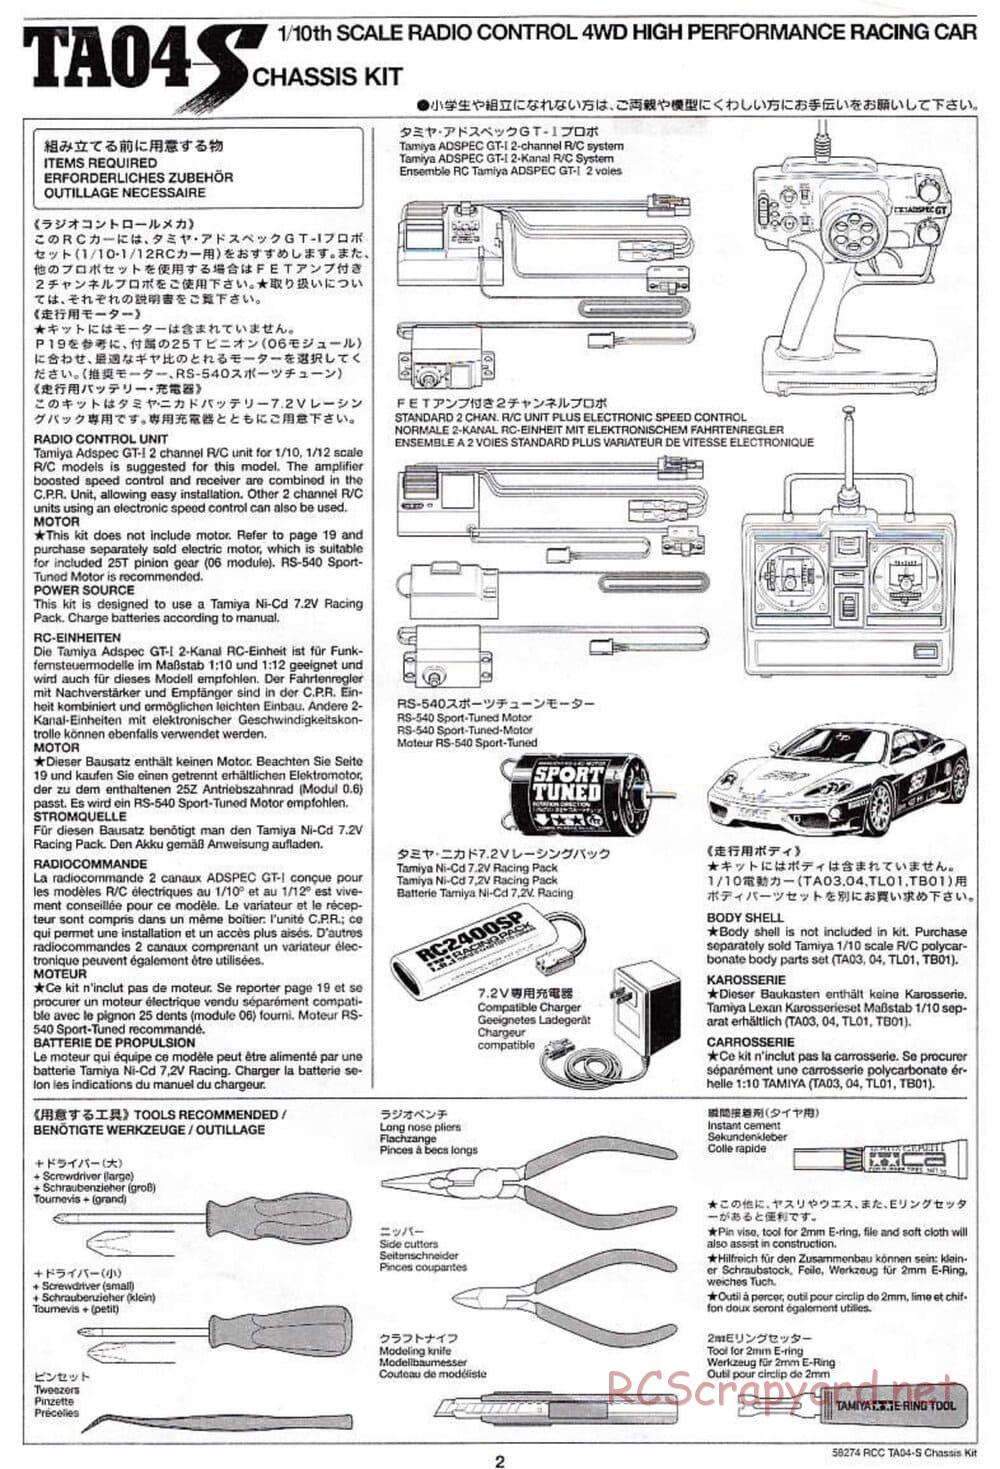 Tamiya - TA-04S Chassis - Manual - Page 2